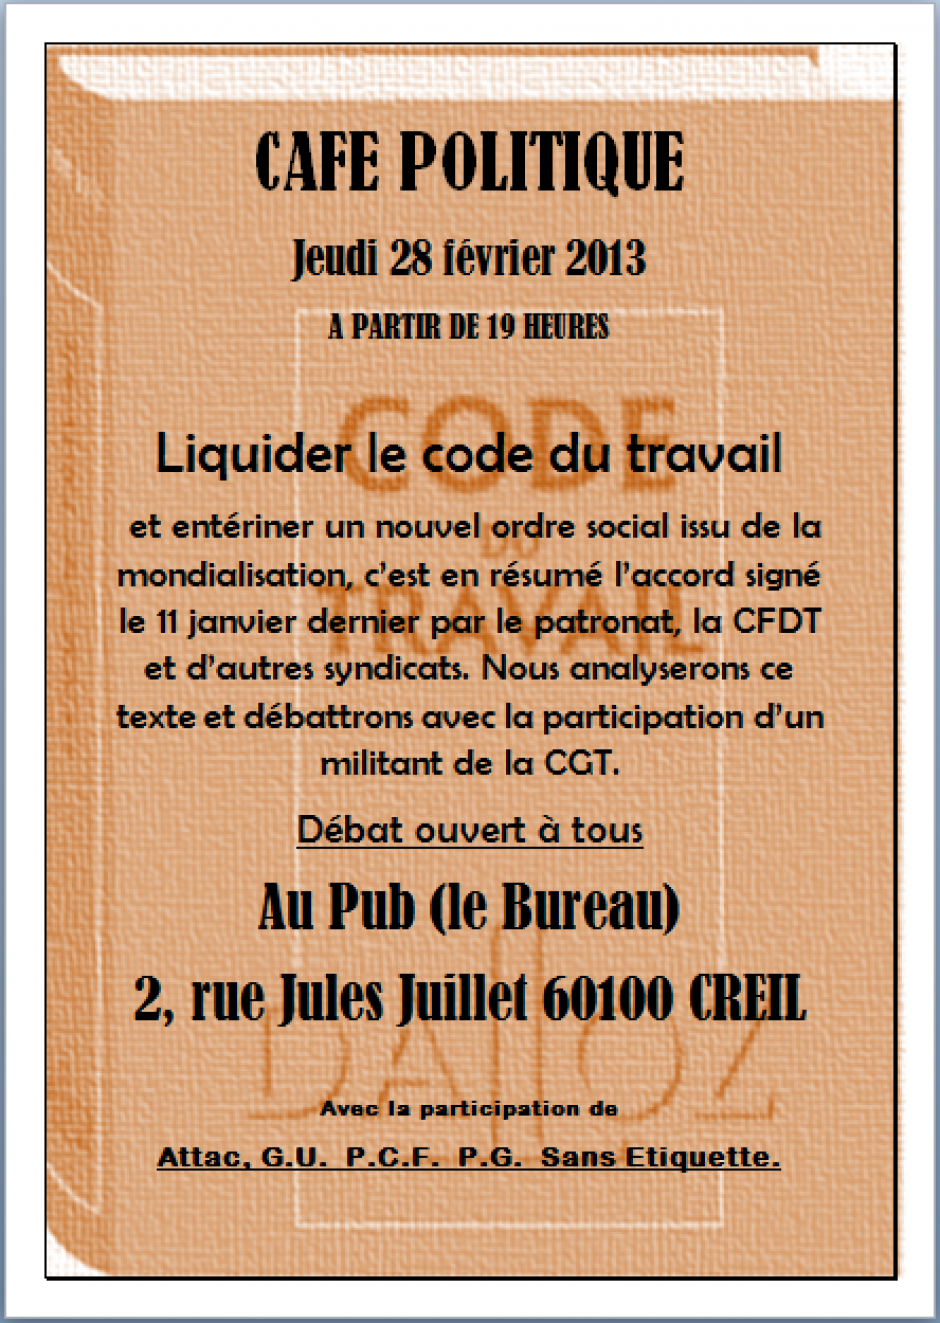 28 février, Creil - Café politique « Liquider le code du travail »